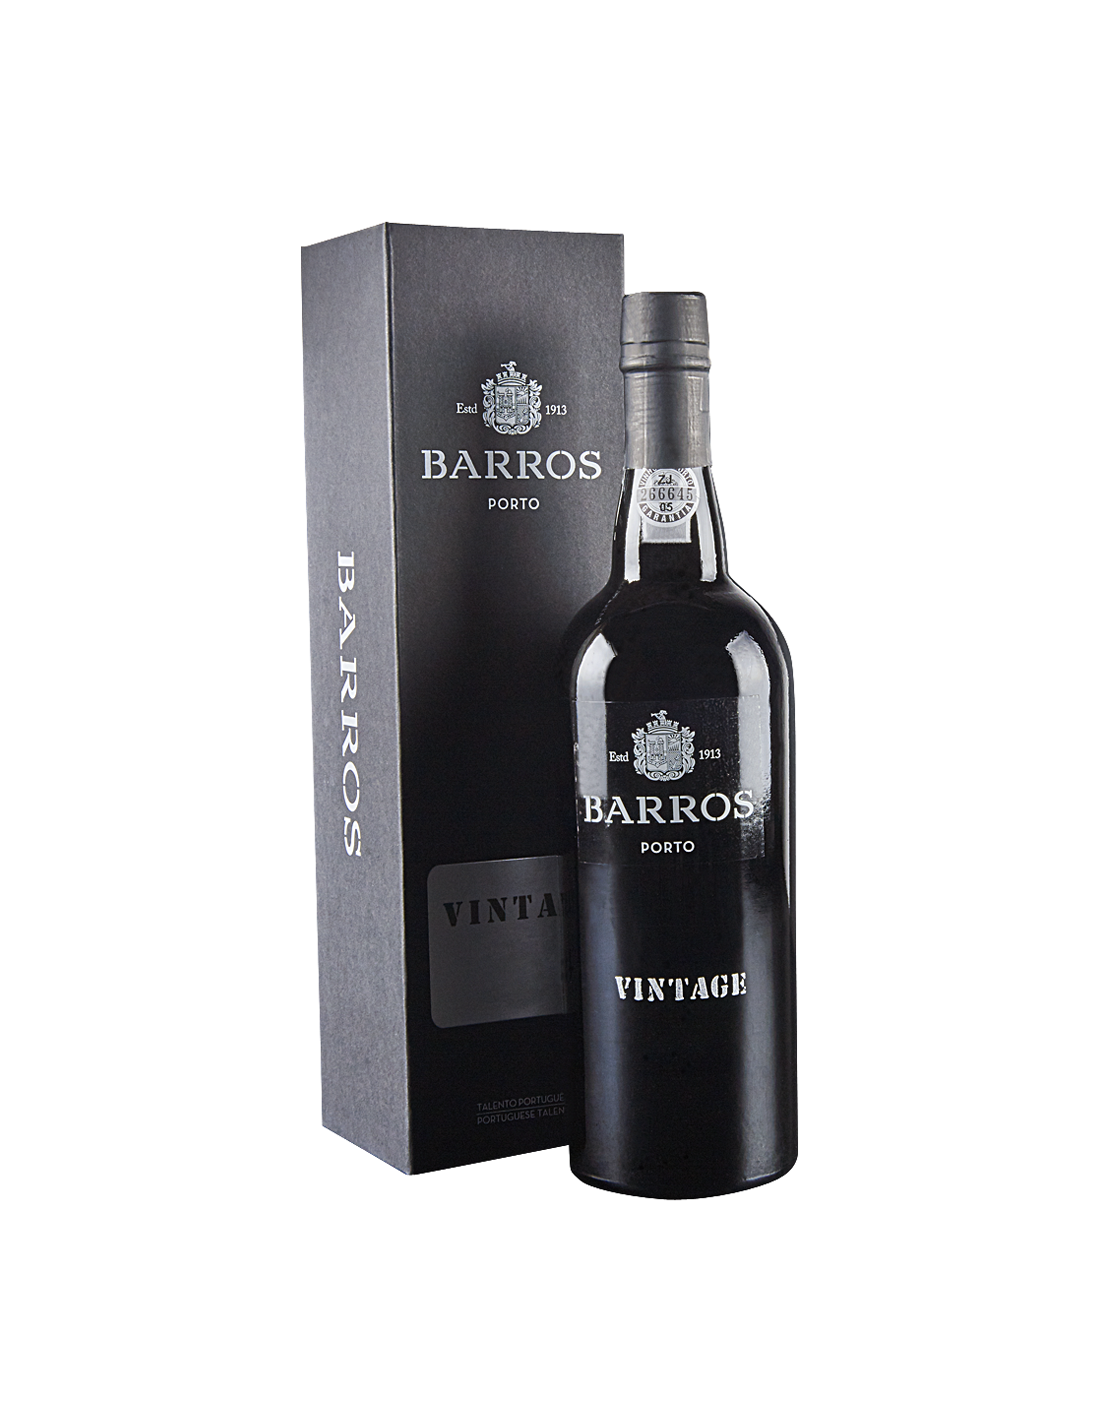 Vin porto rosu dulce, Barros Vintage, 1985, 0.75L, 20% alc., Portugalia alcooldiscount.ro